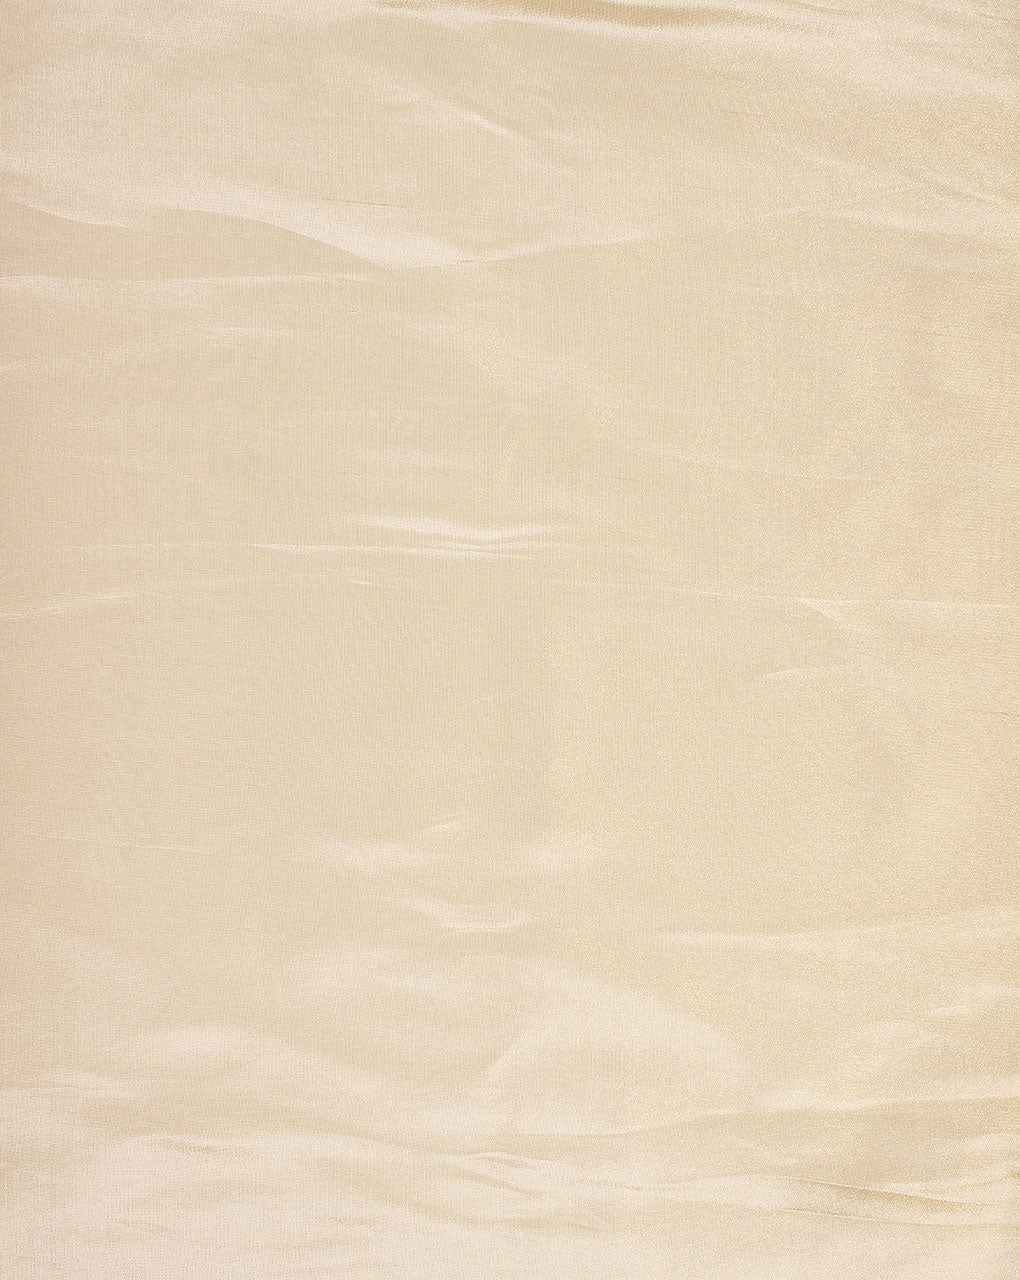 Beige Viscose Tissue Fabric - Fabriclore.com